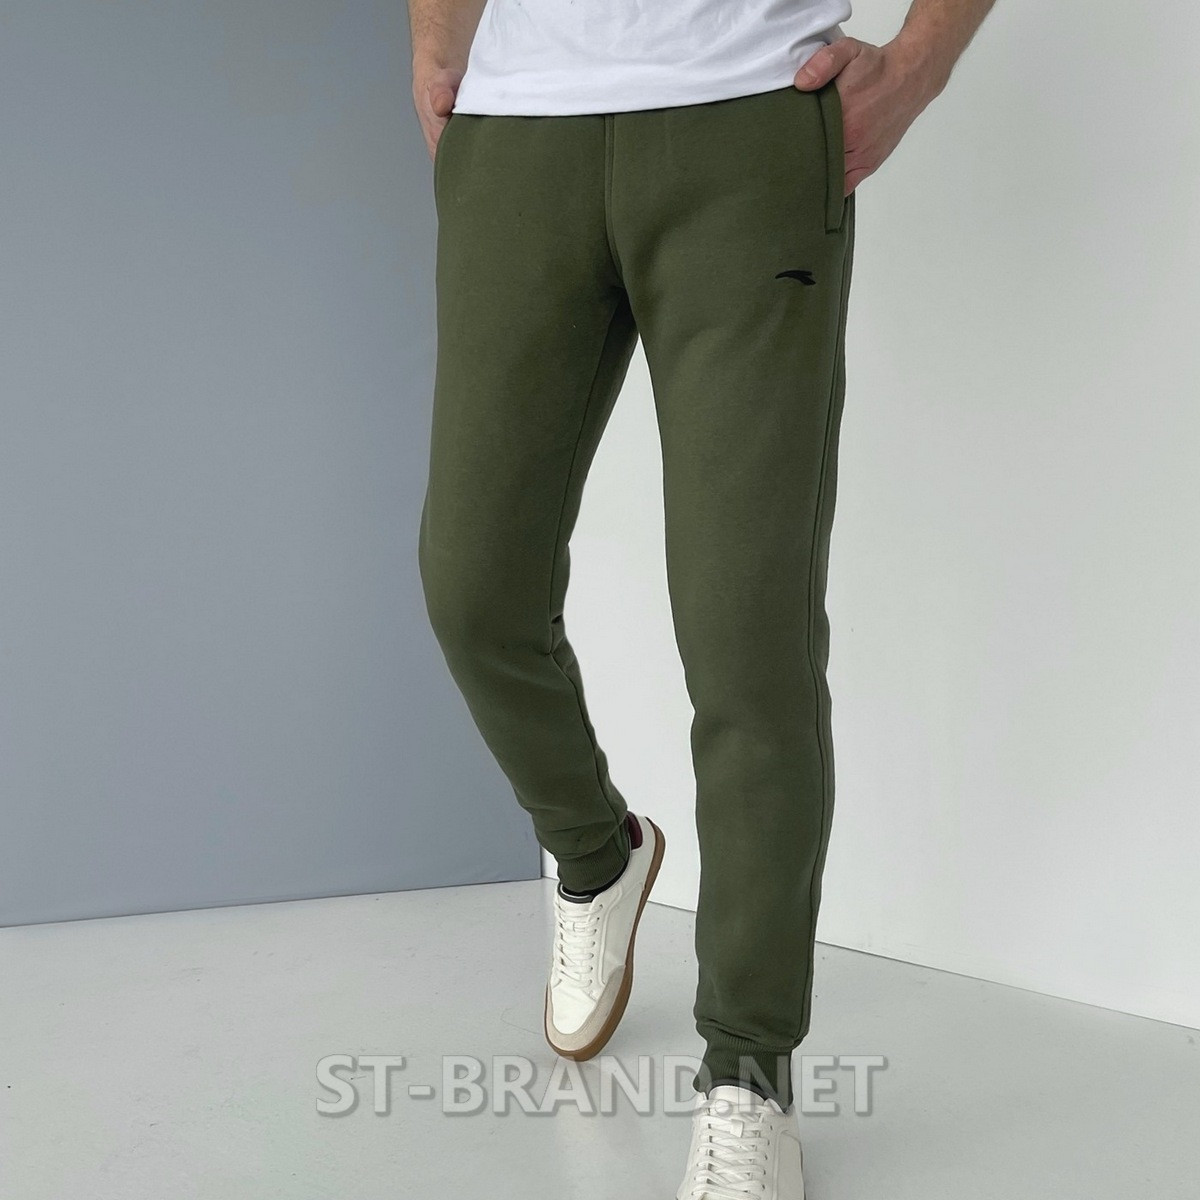 46,48,50,52,54. Утеплені чоловічі спортивні штани з якісного та натурального трикотажу ST-BRAND - оливкові